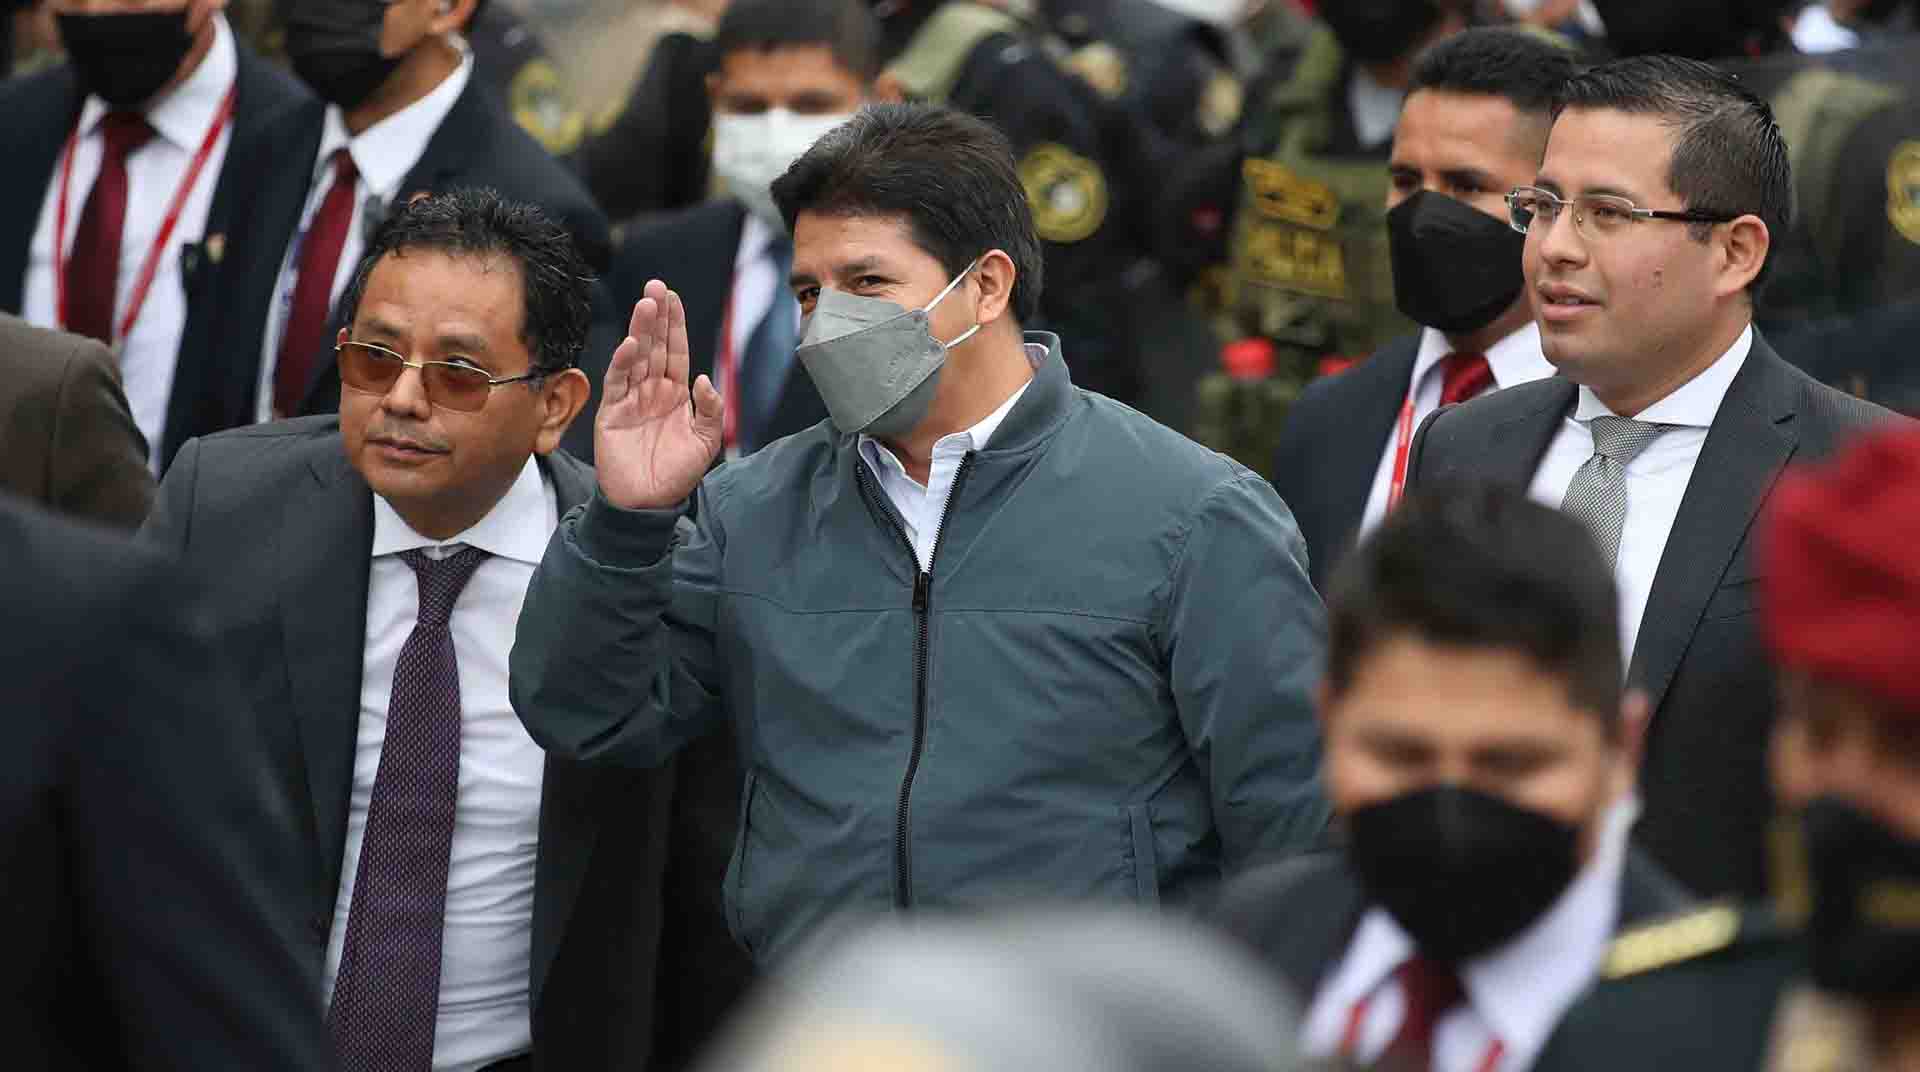 El presidente de Perú, Pedro Castillo, rechazó la renuncia del primer ministro, Aníbal Torres, lo que provocó que este siguiera en su cargo. Foto: EFE.